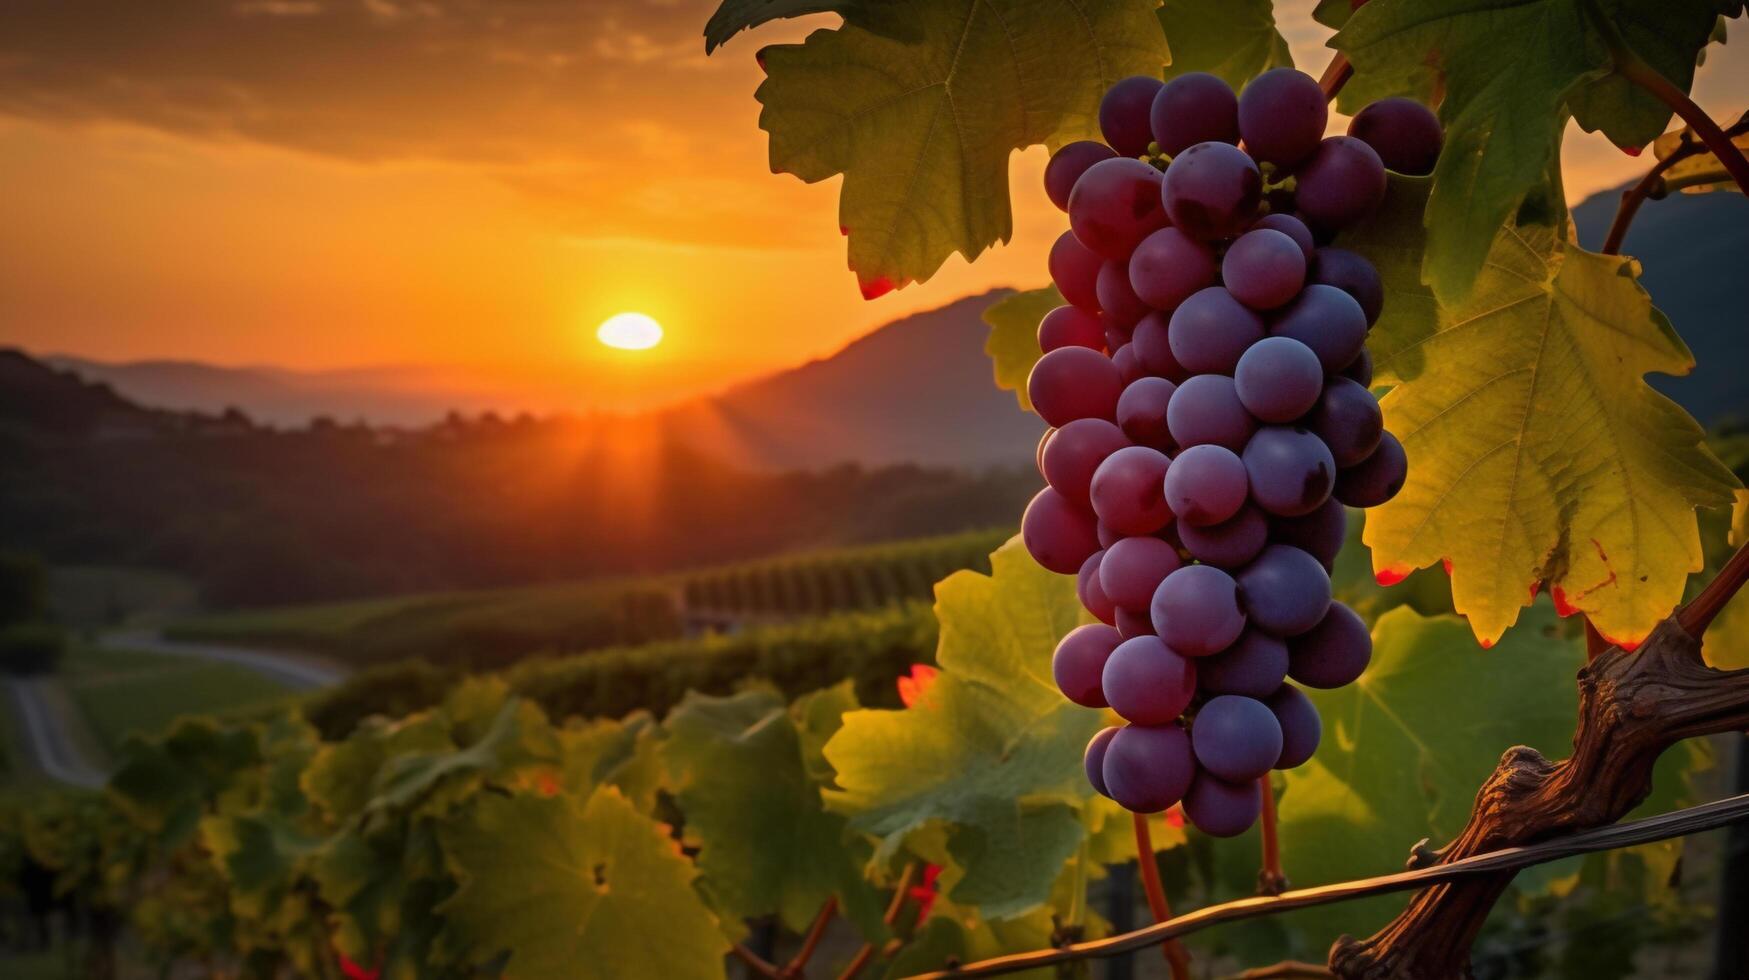 uvas en el vino a puesta de sol foto